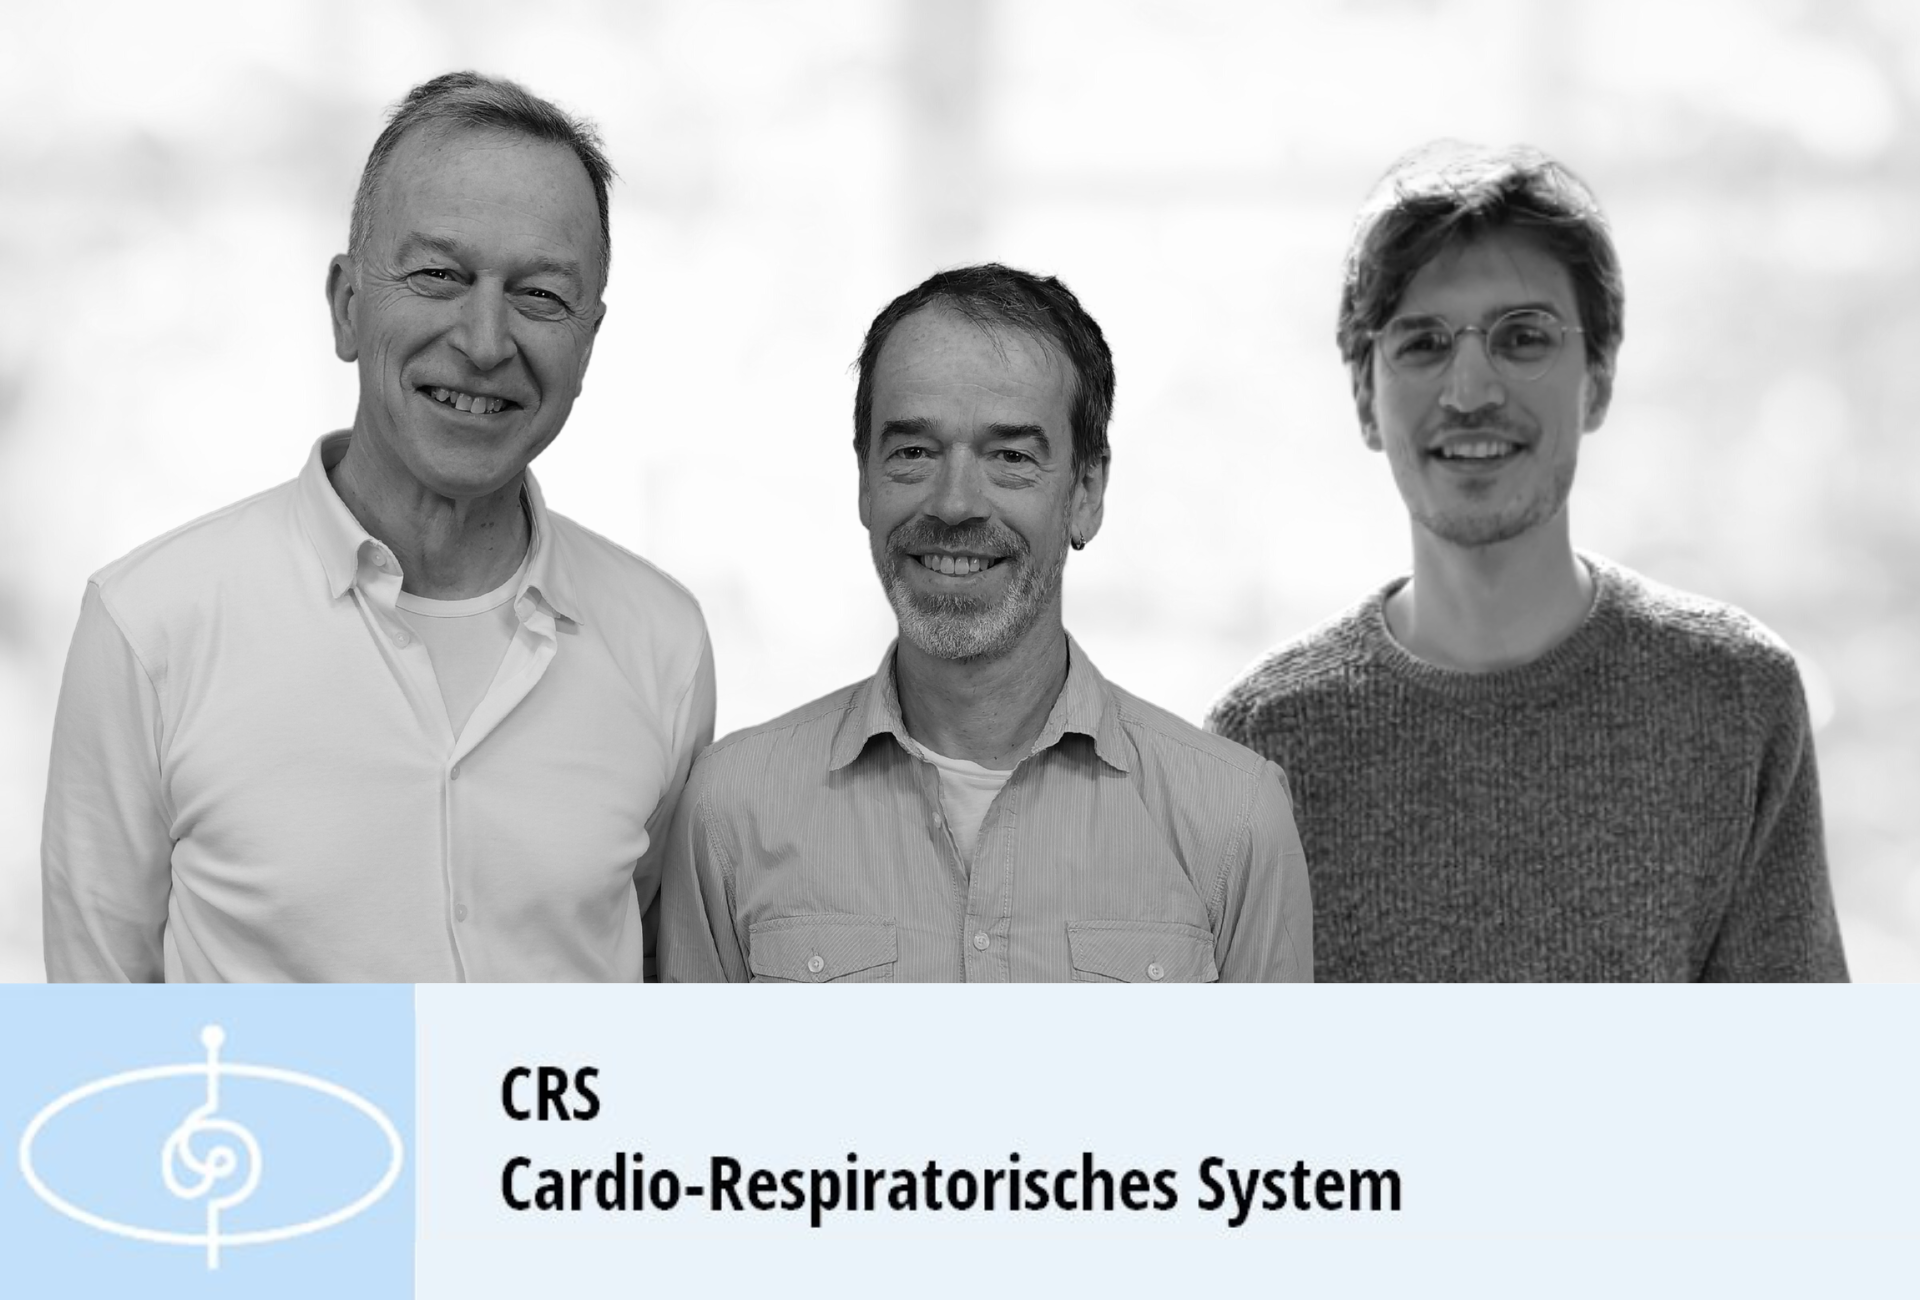 QVO: Cardio-Respiratorisches System (CRS)